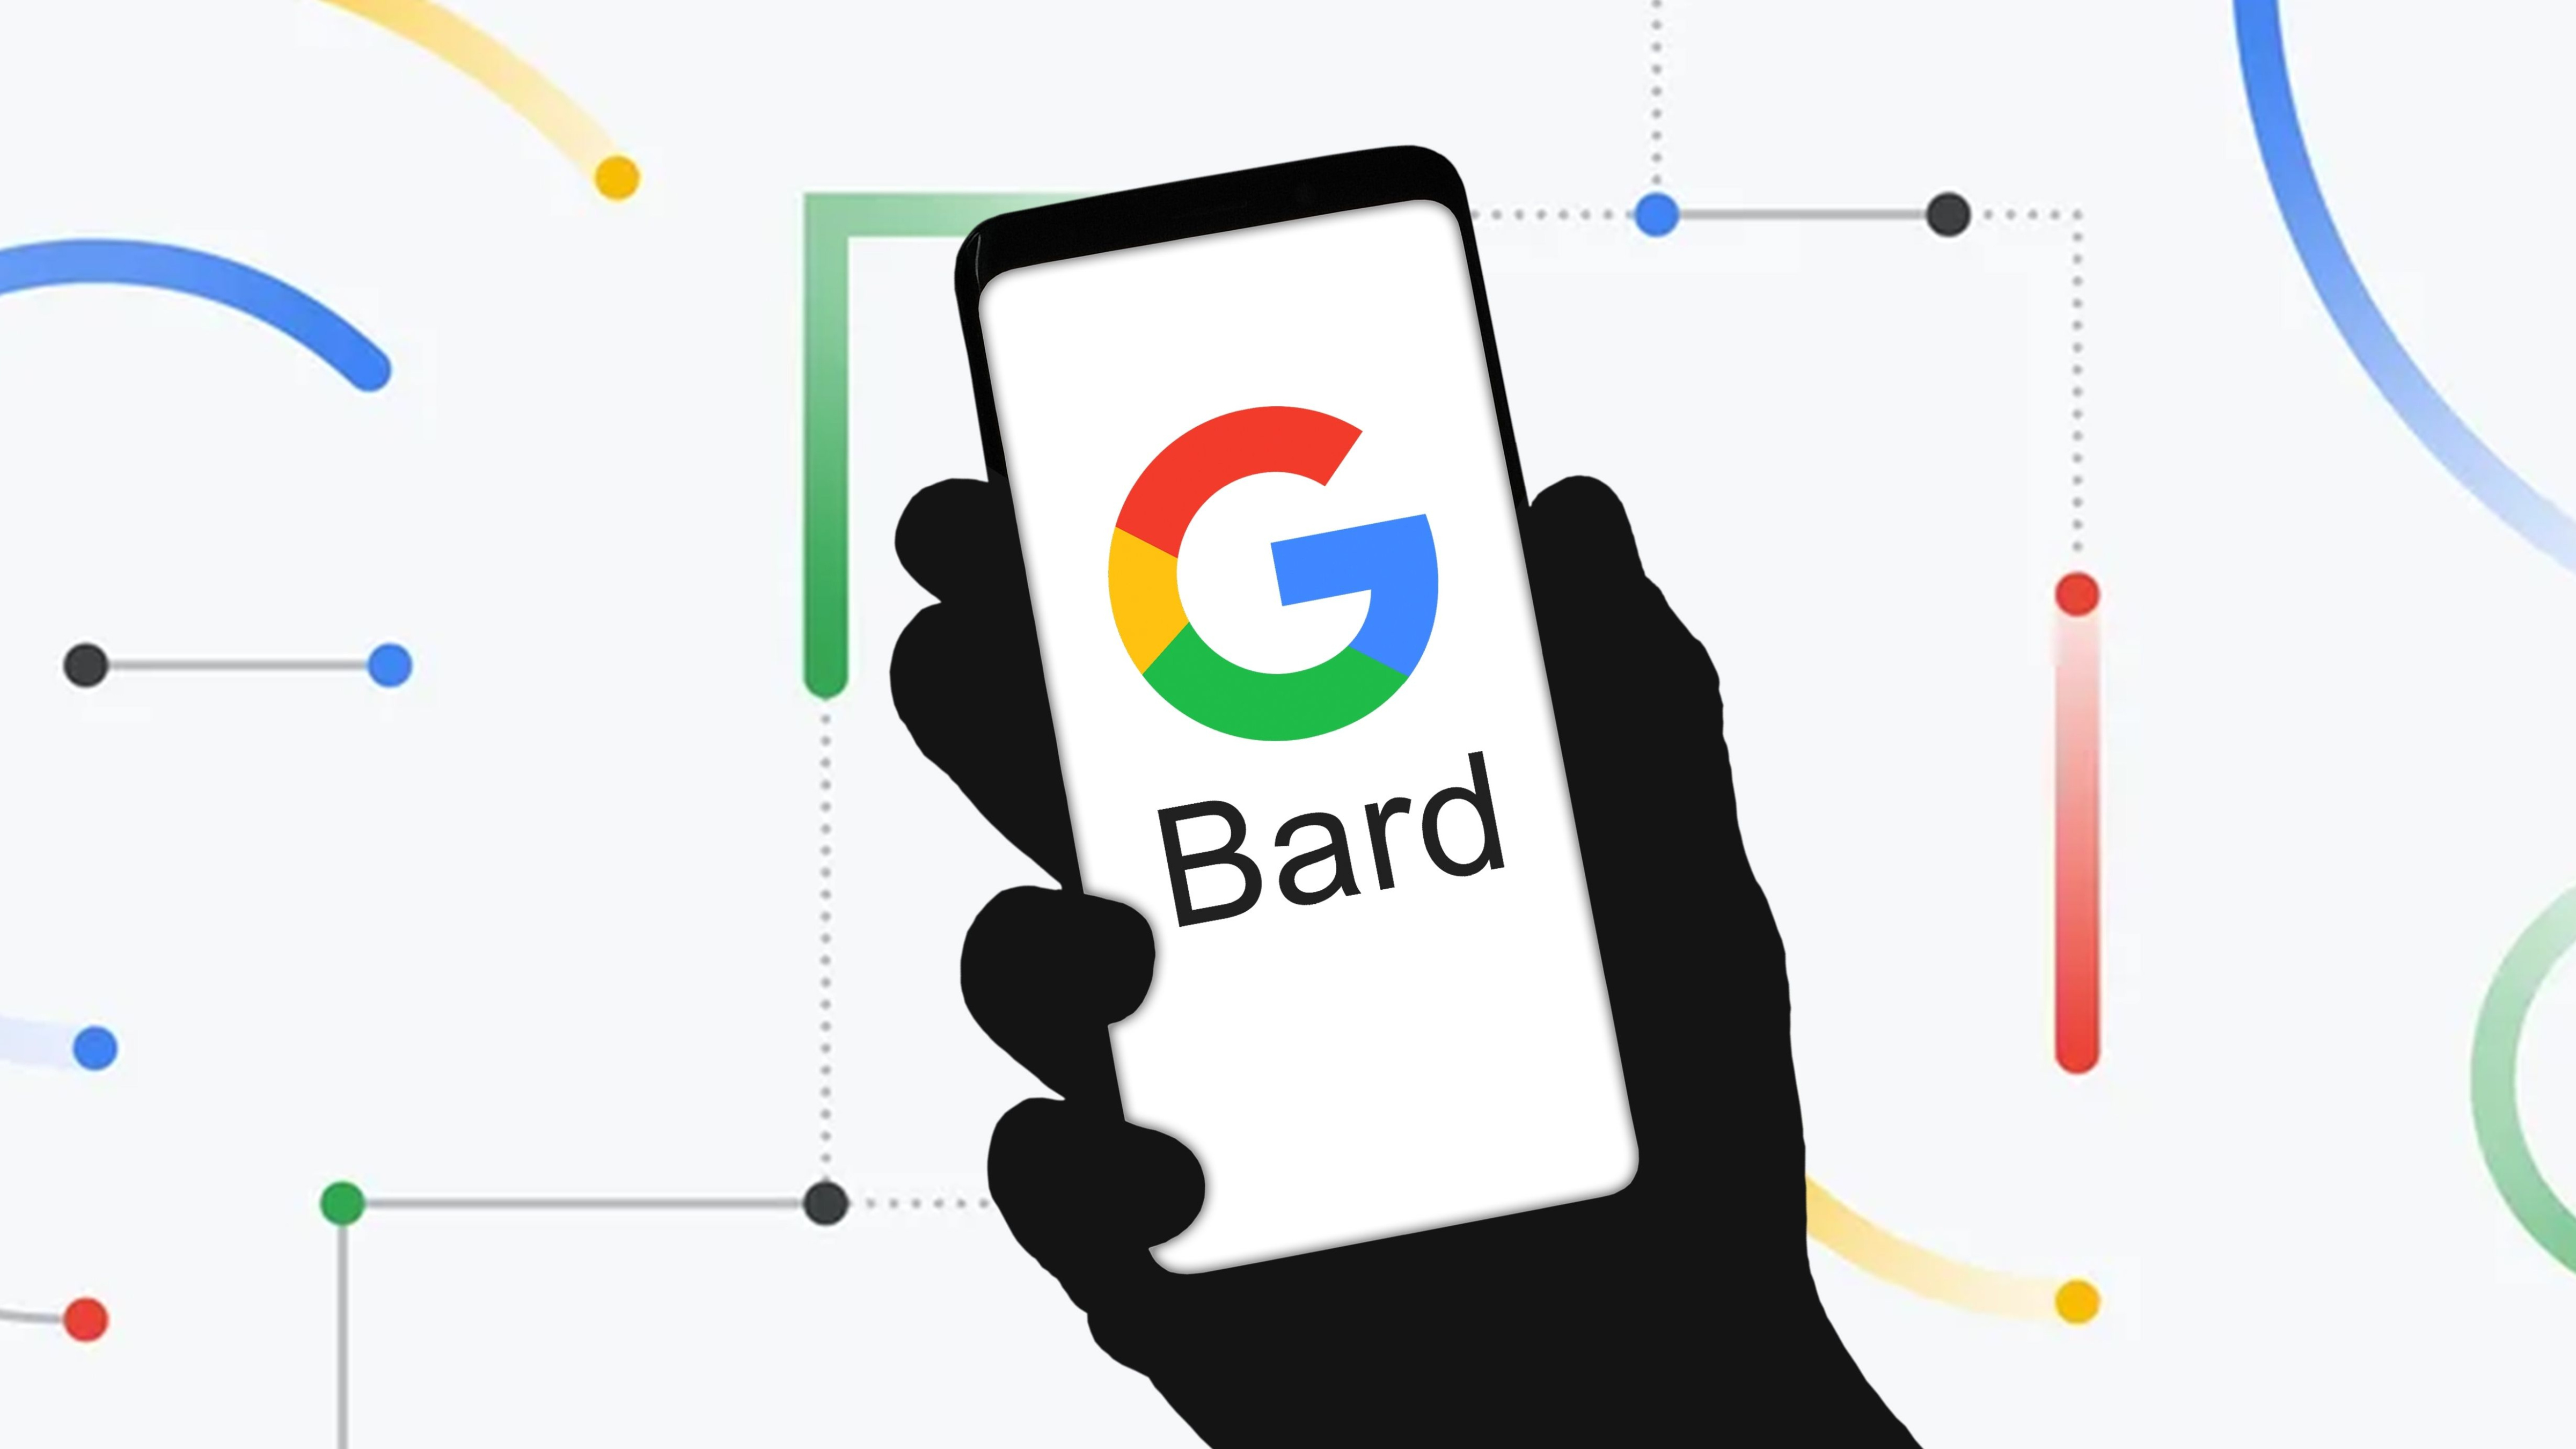 Предстоящее обновление Google Bard дает мне надежду на моего любимого чат-бота с искусственным интеллектом